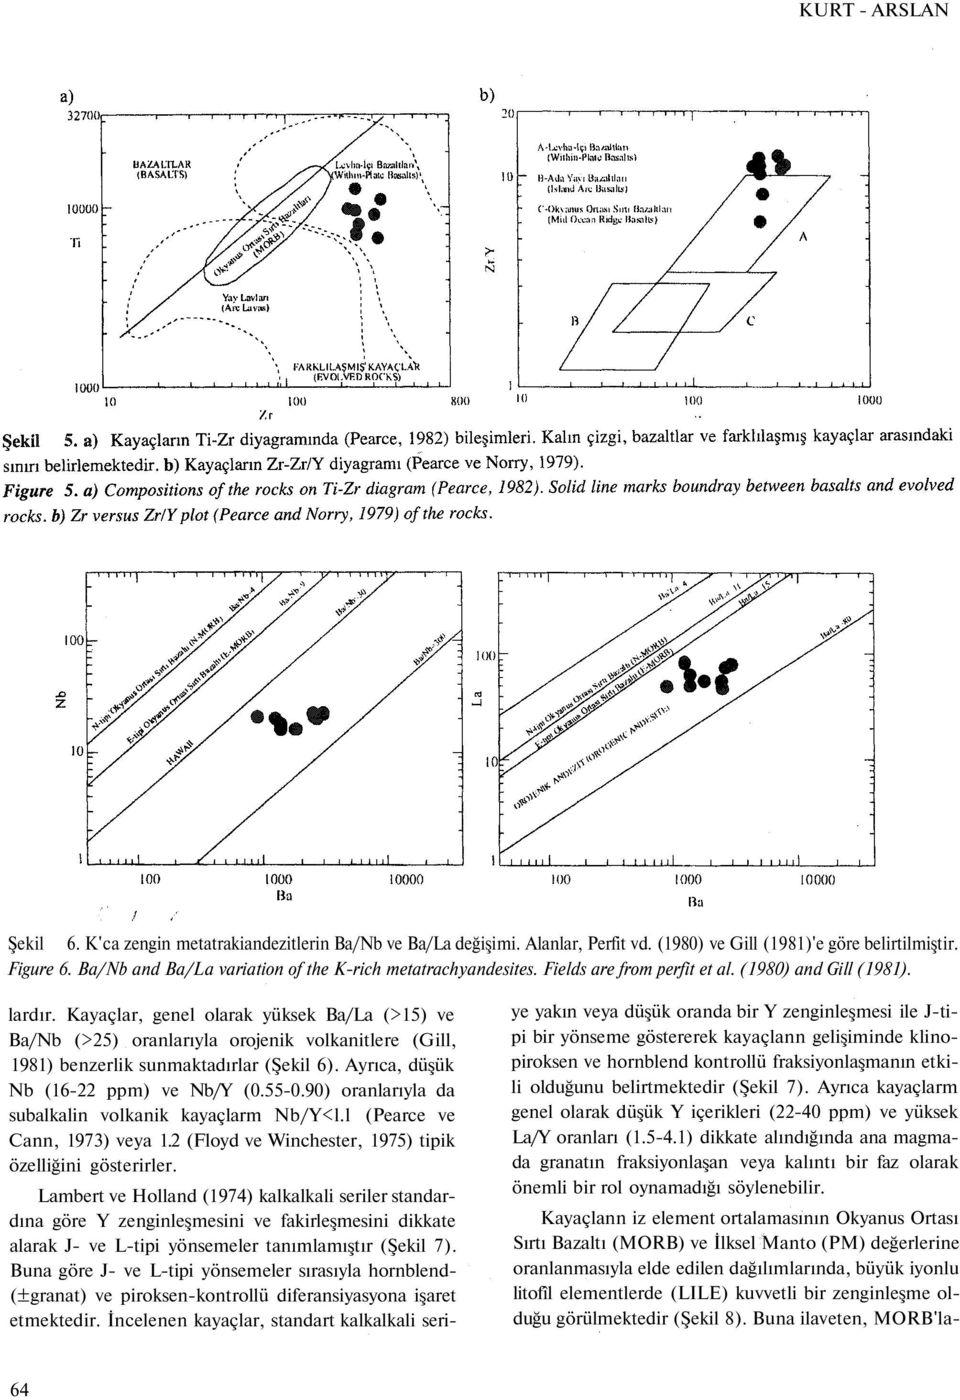 Kayaçlar, genel olarak yüksek Ba/La (>15) ve Ba/Nb (>25) oranlarıyla orojenik volkanitlere (Gill, 1981) benzerlik sunmaktadırlar (Şekil 6). Ayrıca, düşük Nb (16-22 ppm) ve Nb/Y (0.55-0.